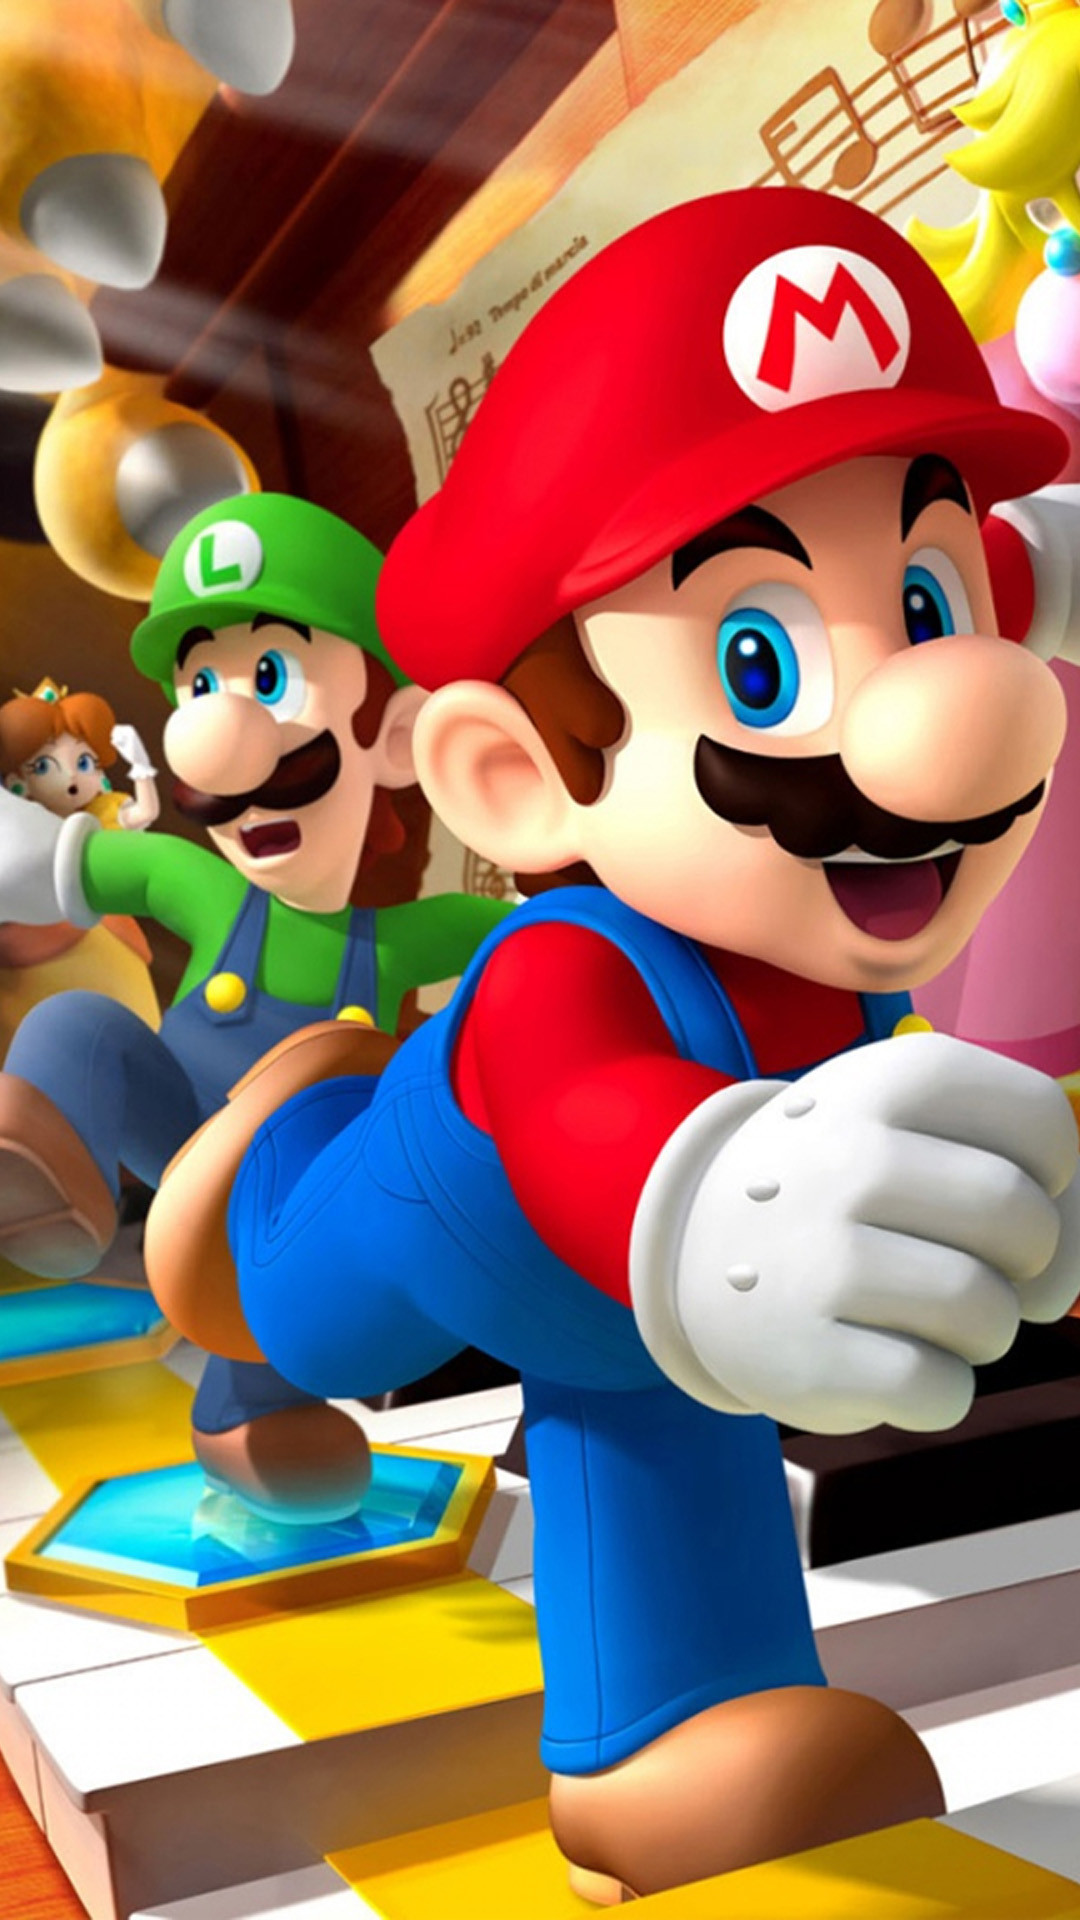 1080x1920 Mario bros Games Galaxy S5 wallpaper